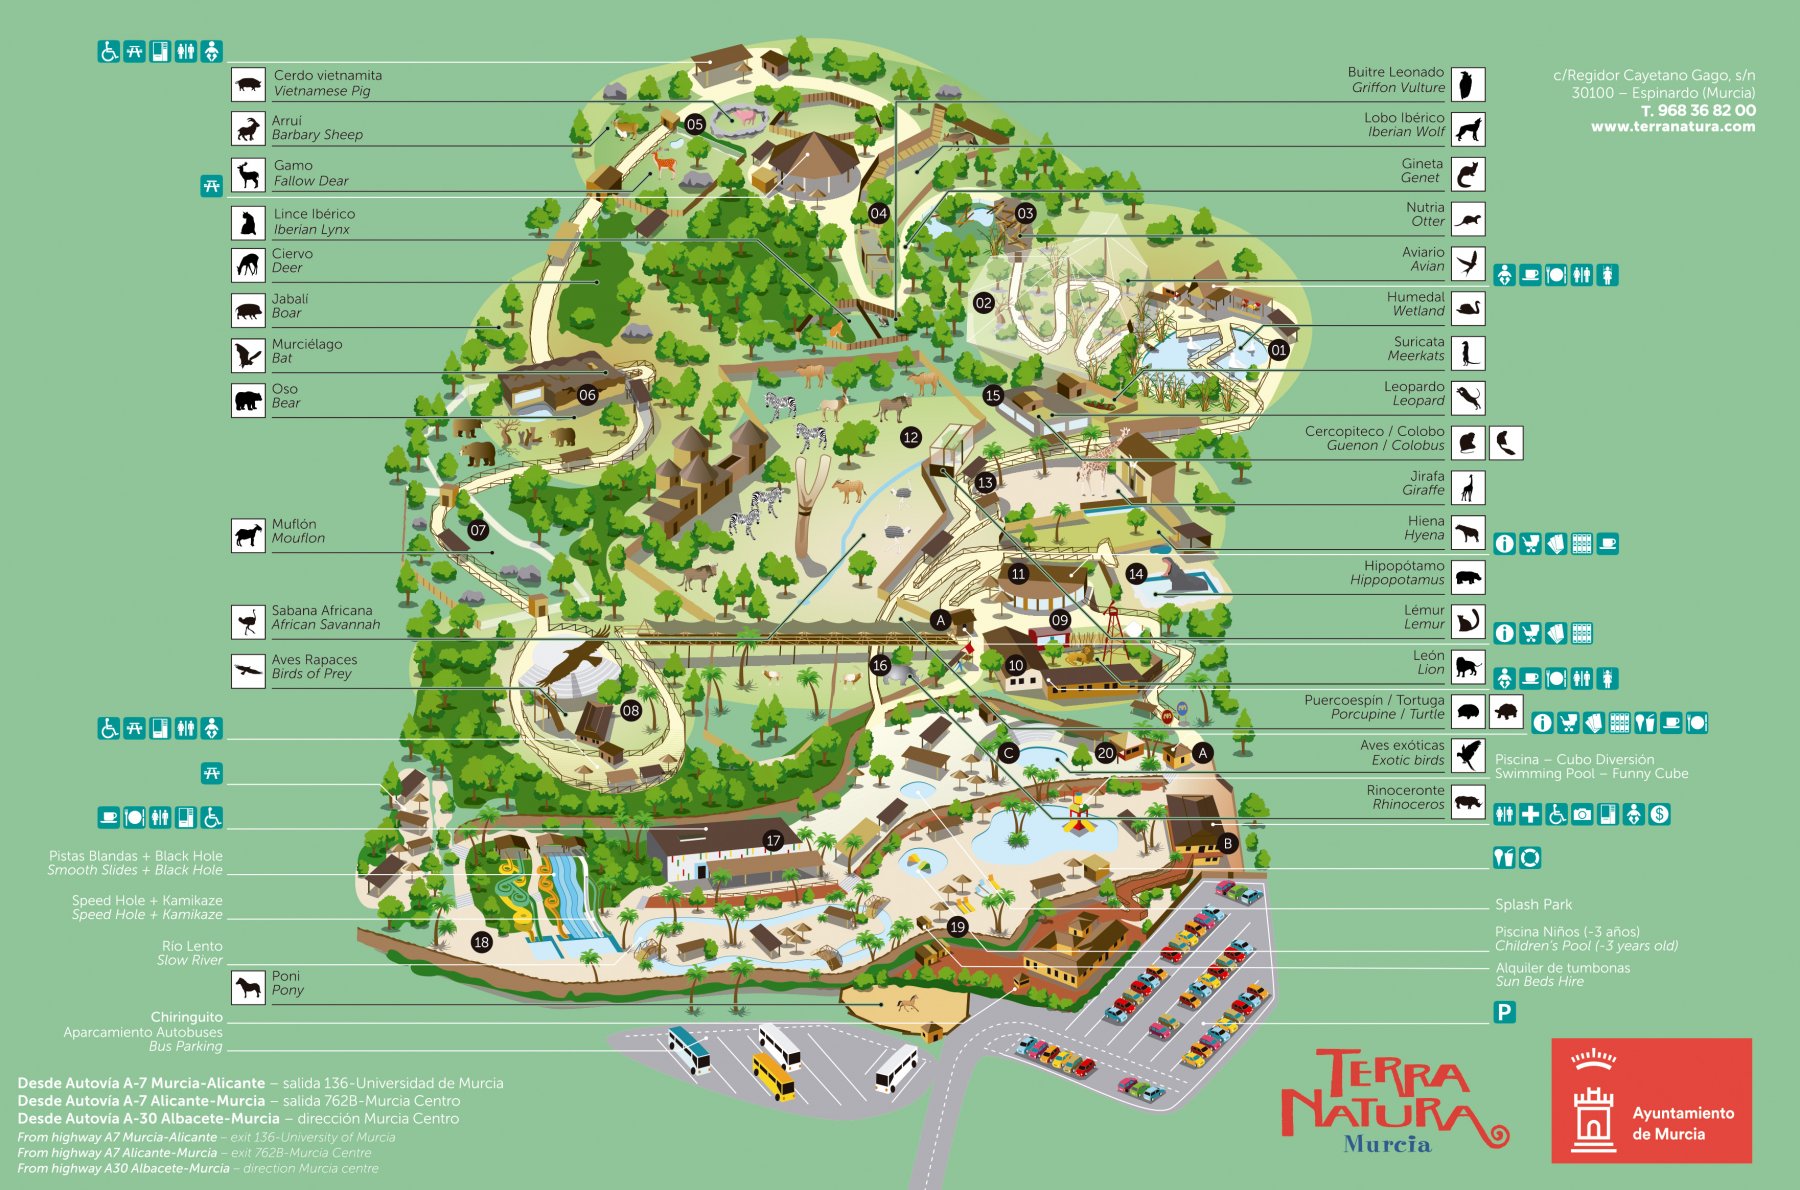 Plano del parque - Terra Natura Murcia